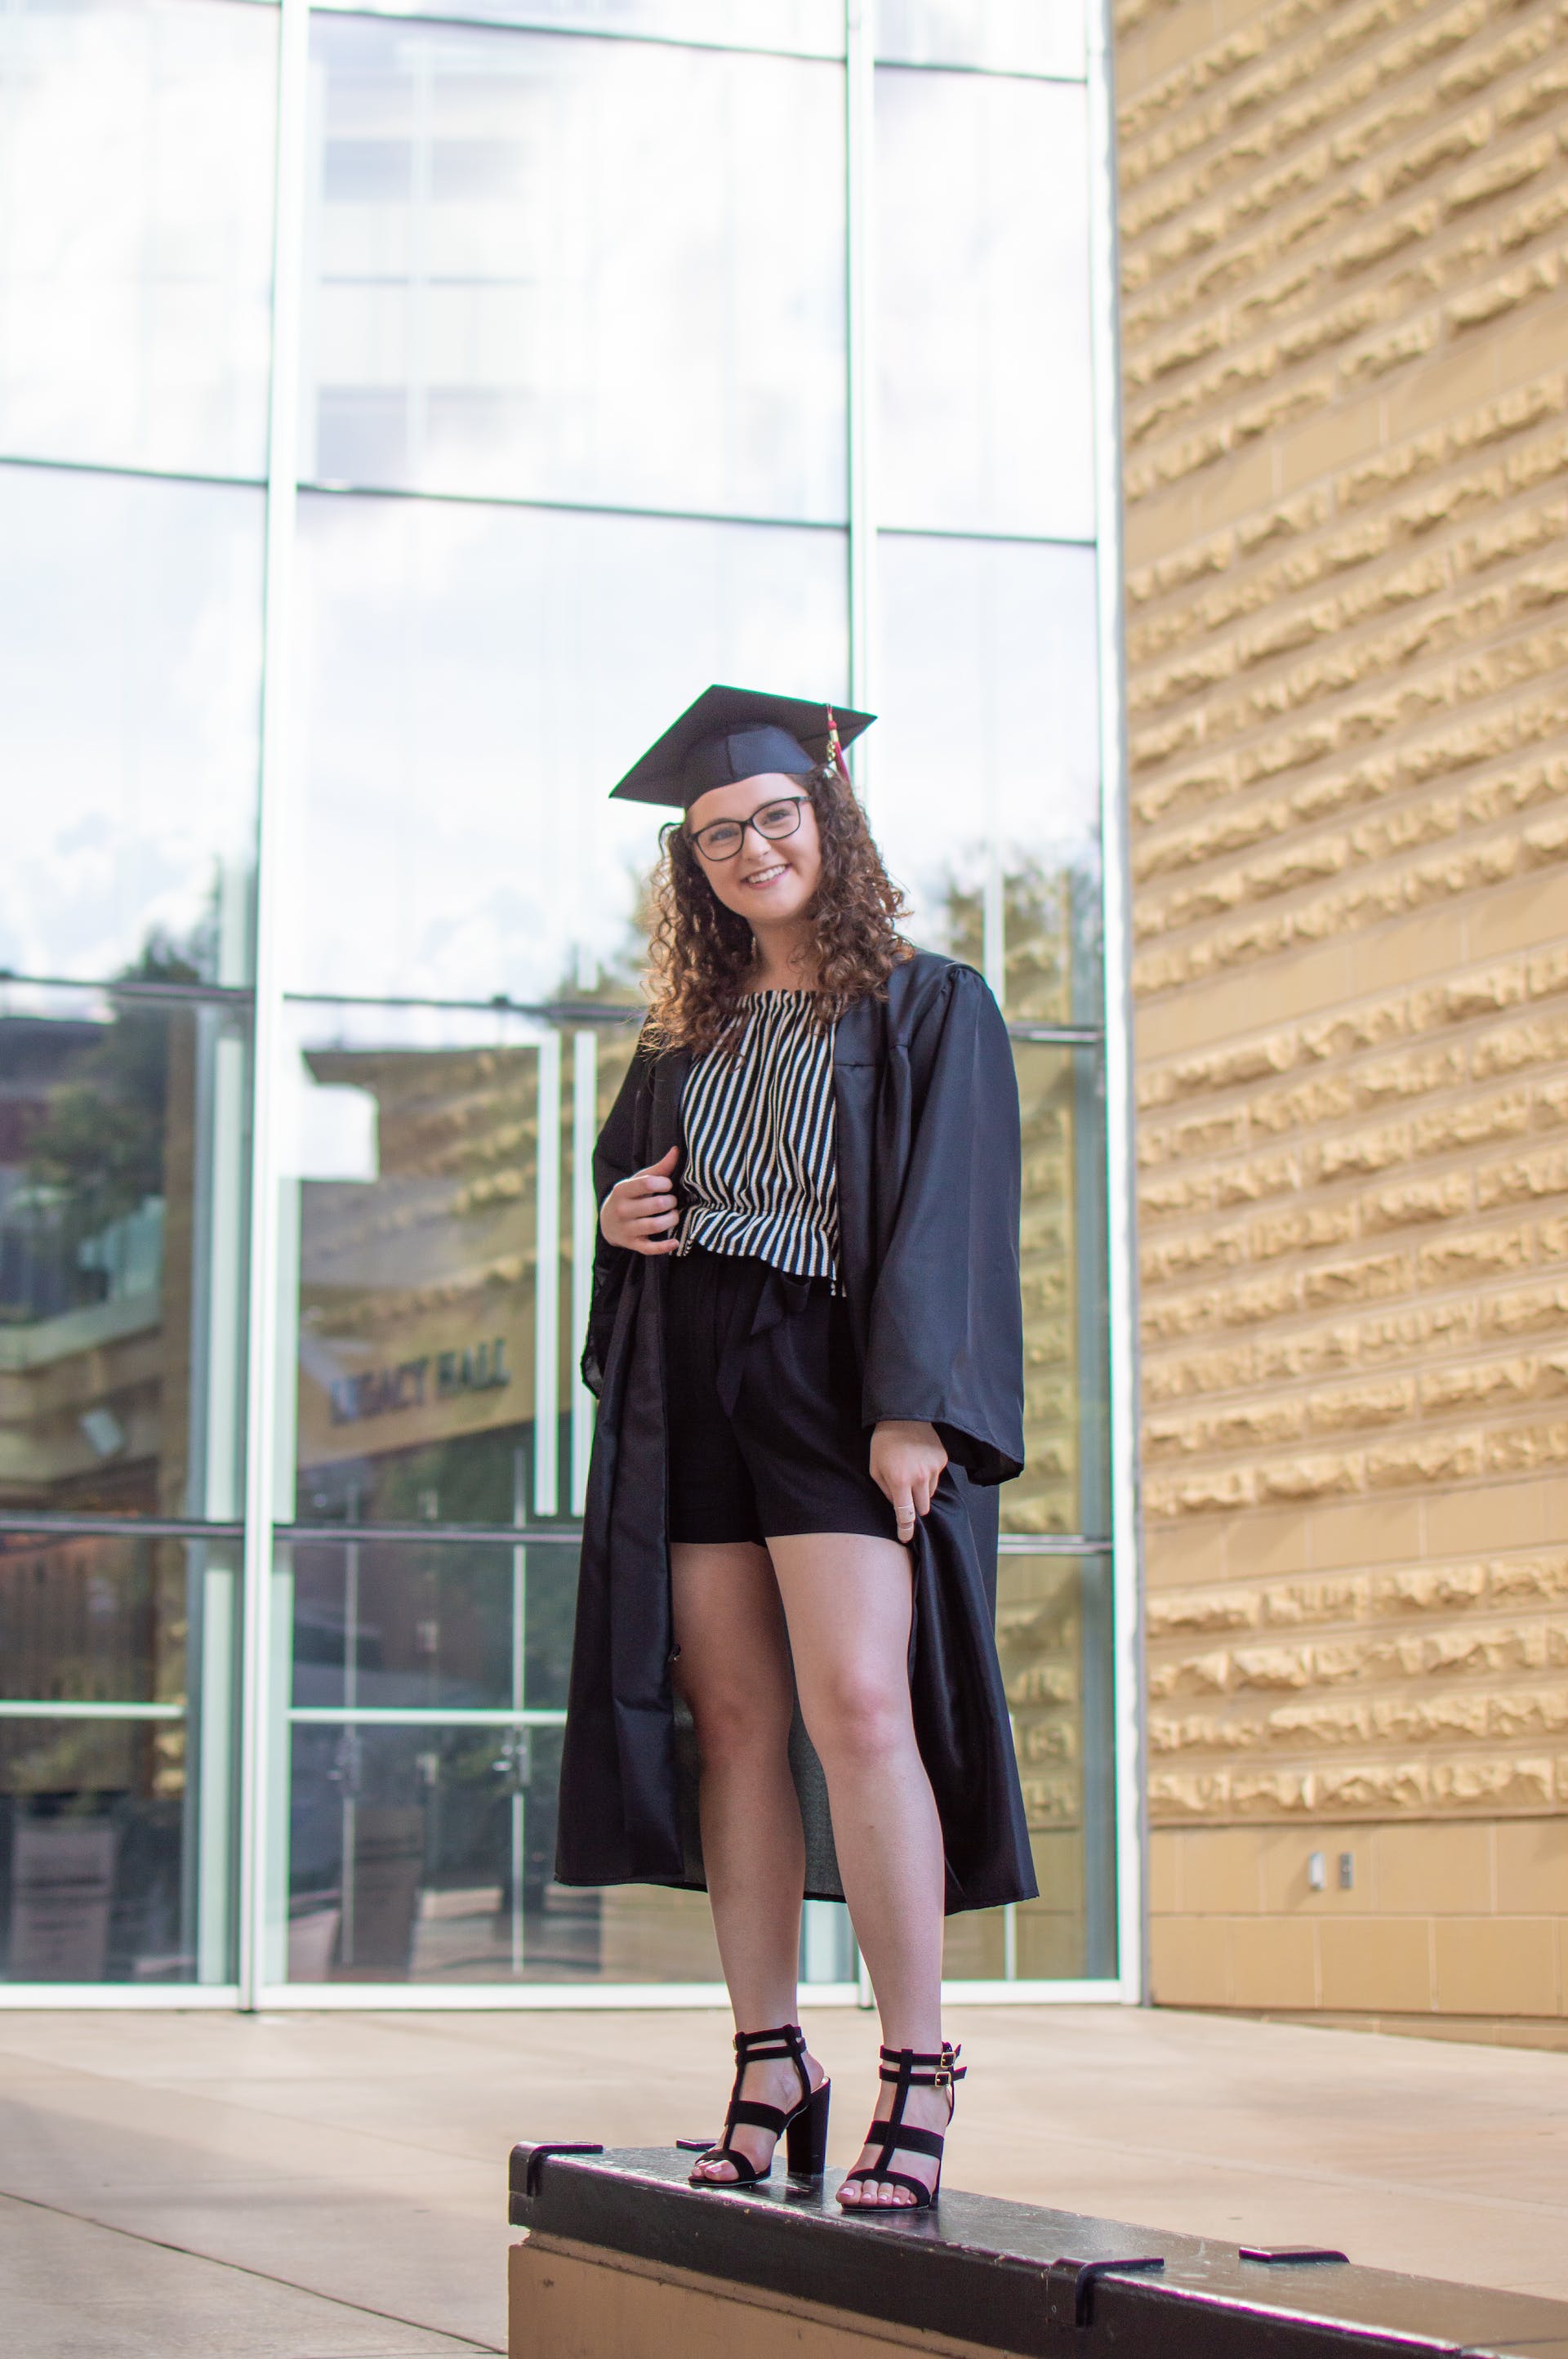 Une jeune femme en robe de fin d'études | Source : Pexels